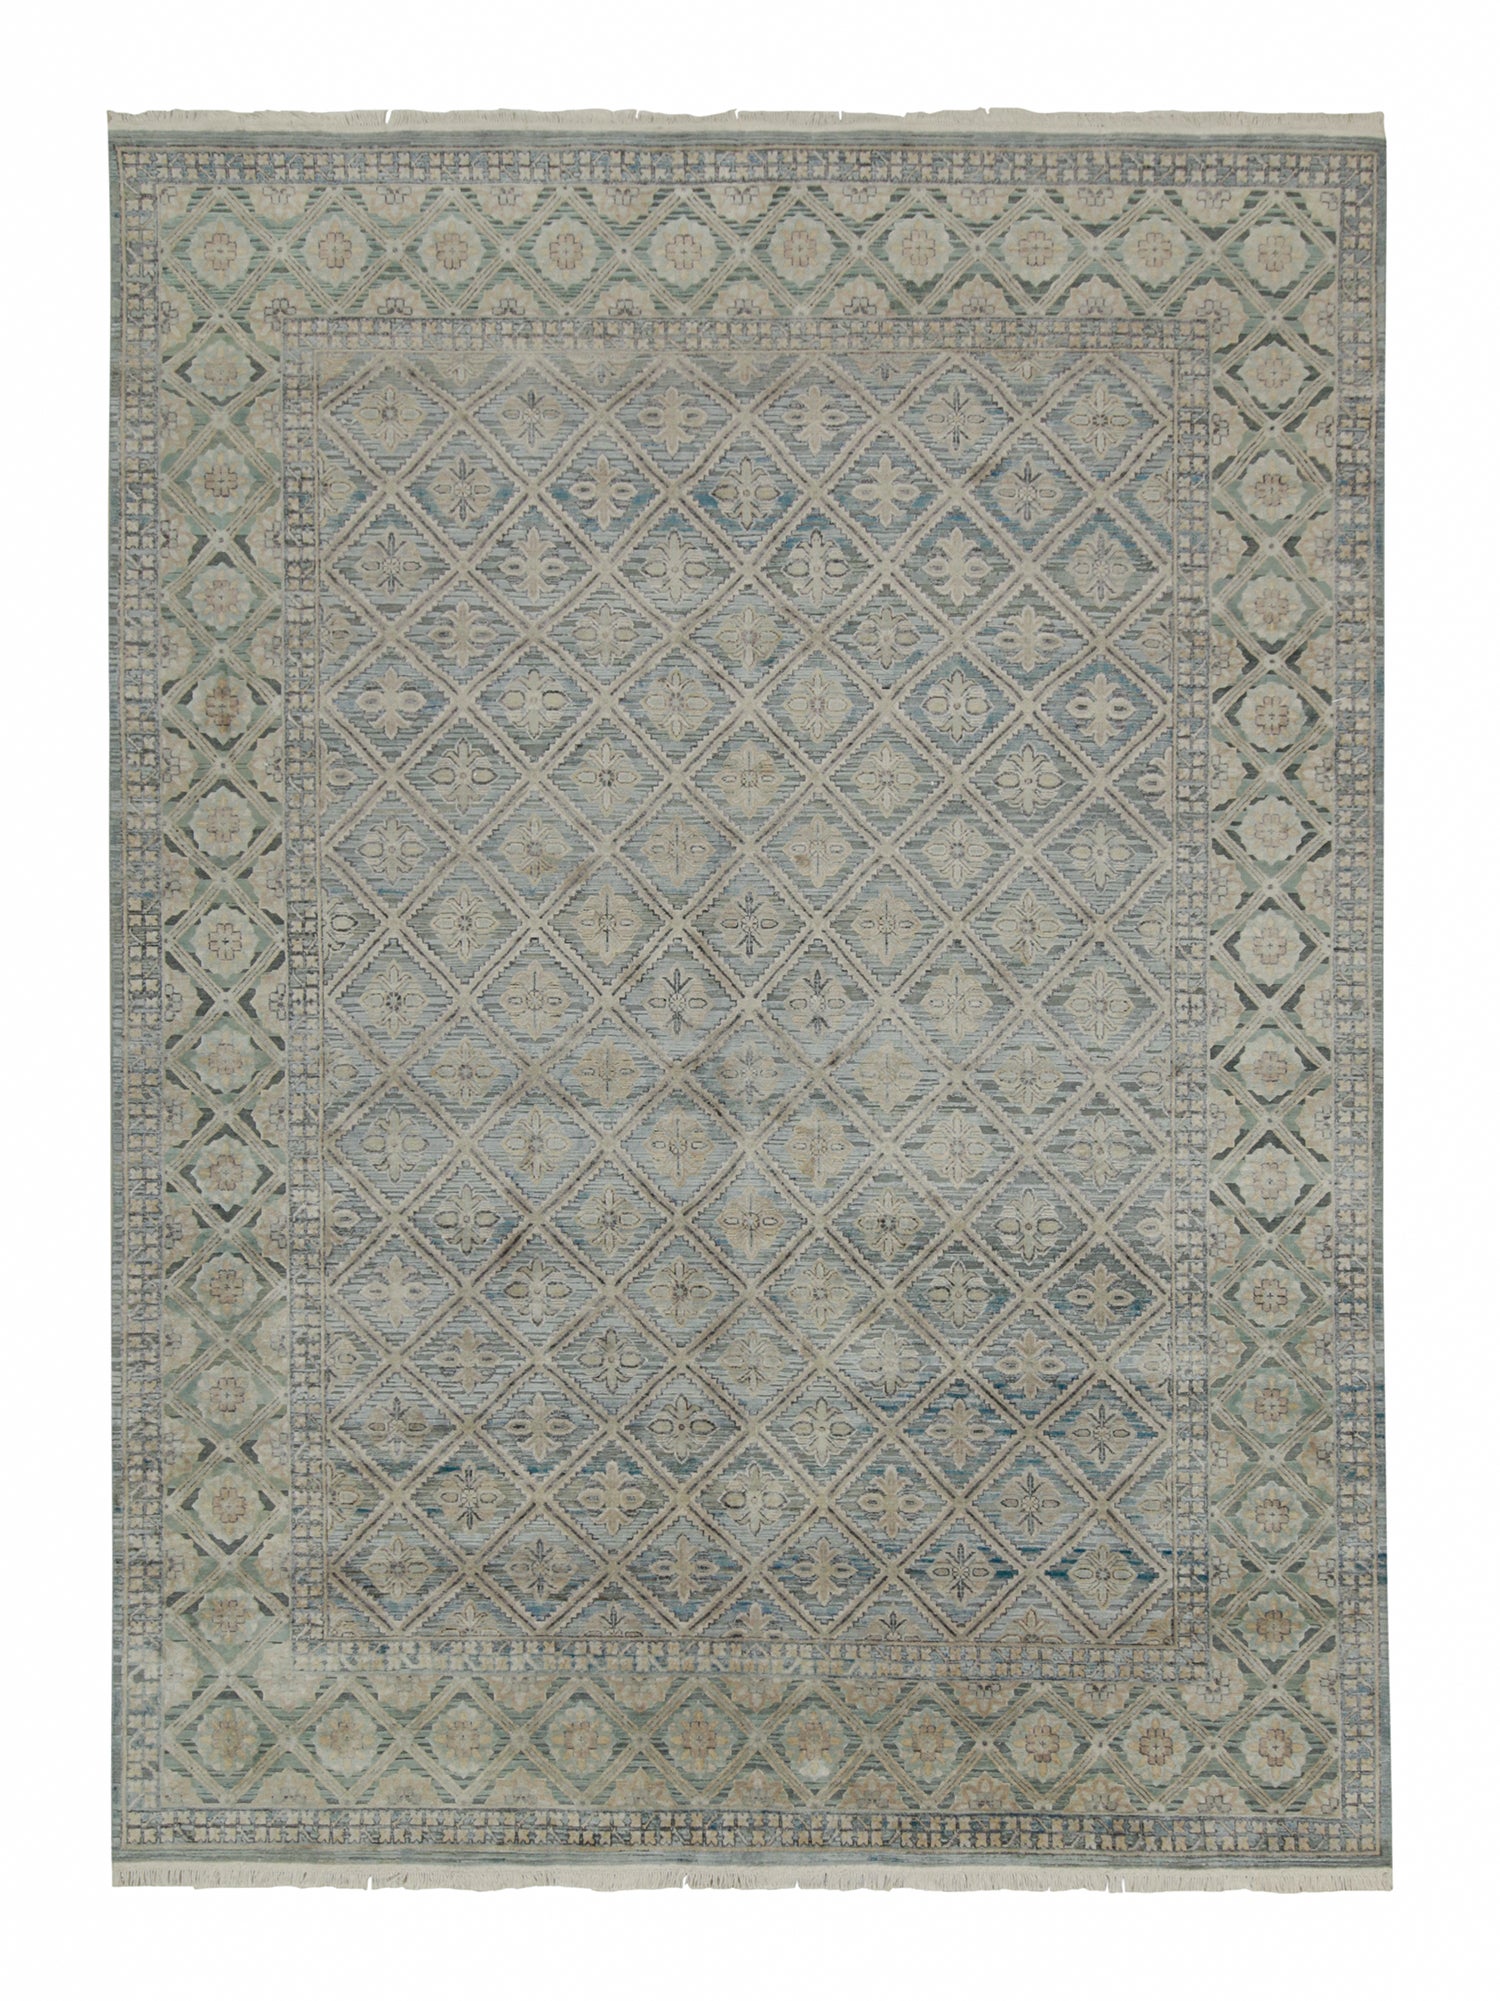 Teppich & Kelim-Teppich im klassischen Stil mit grauem und blauem Blumenmuster